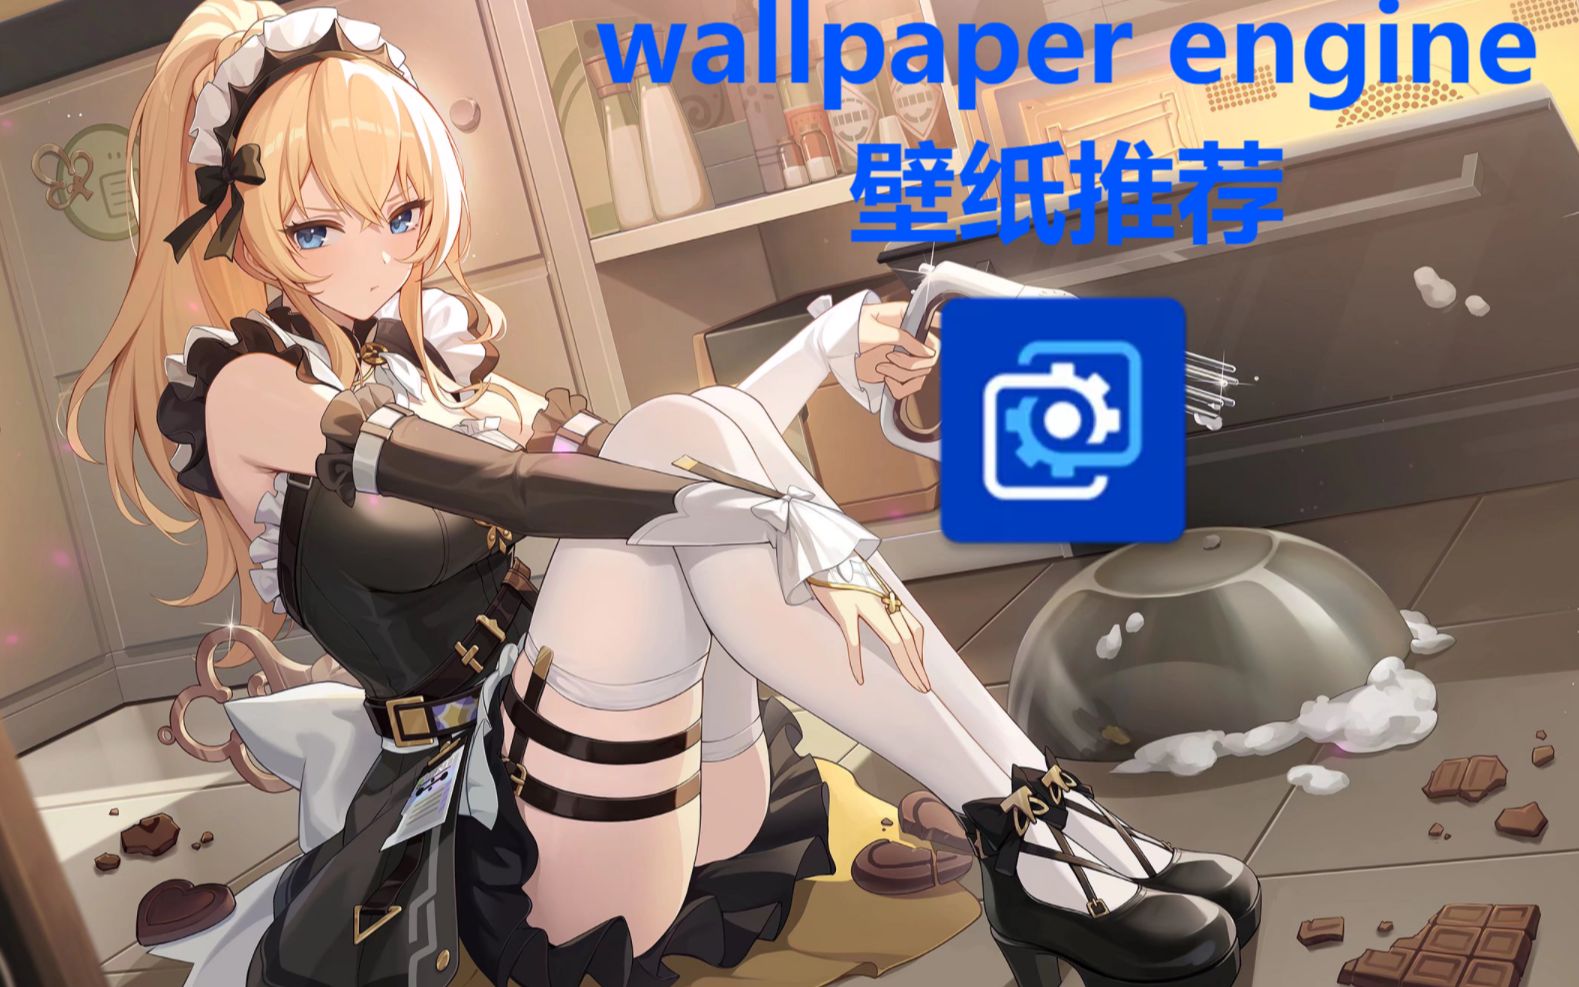 【wallpaper engine】二次元精选壁纸推荐 第56期